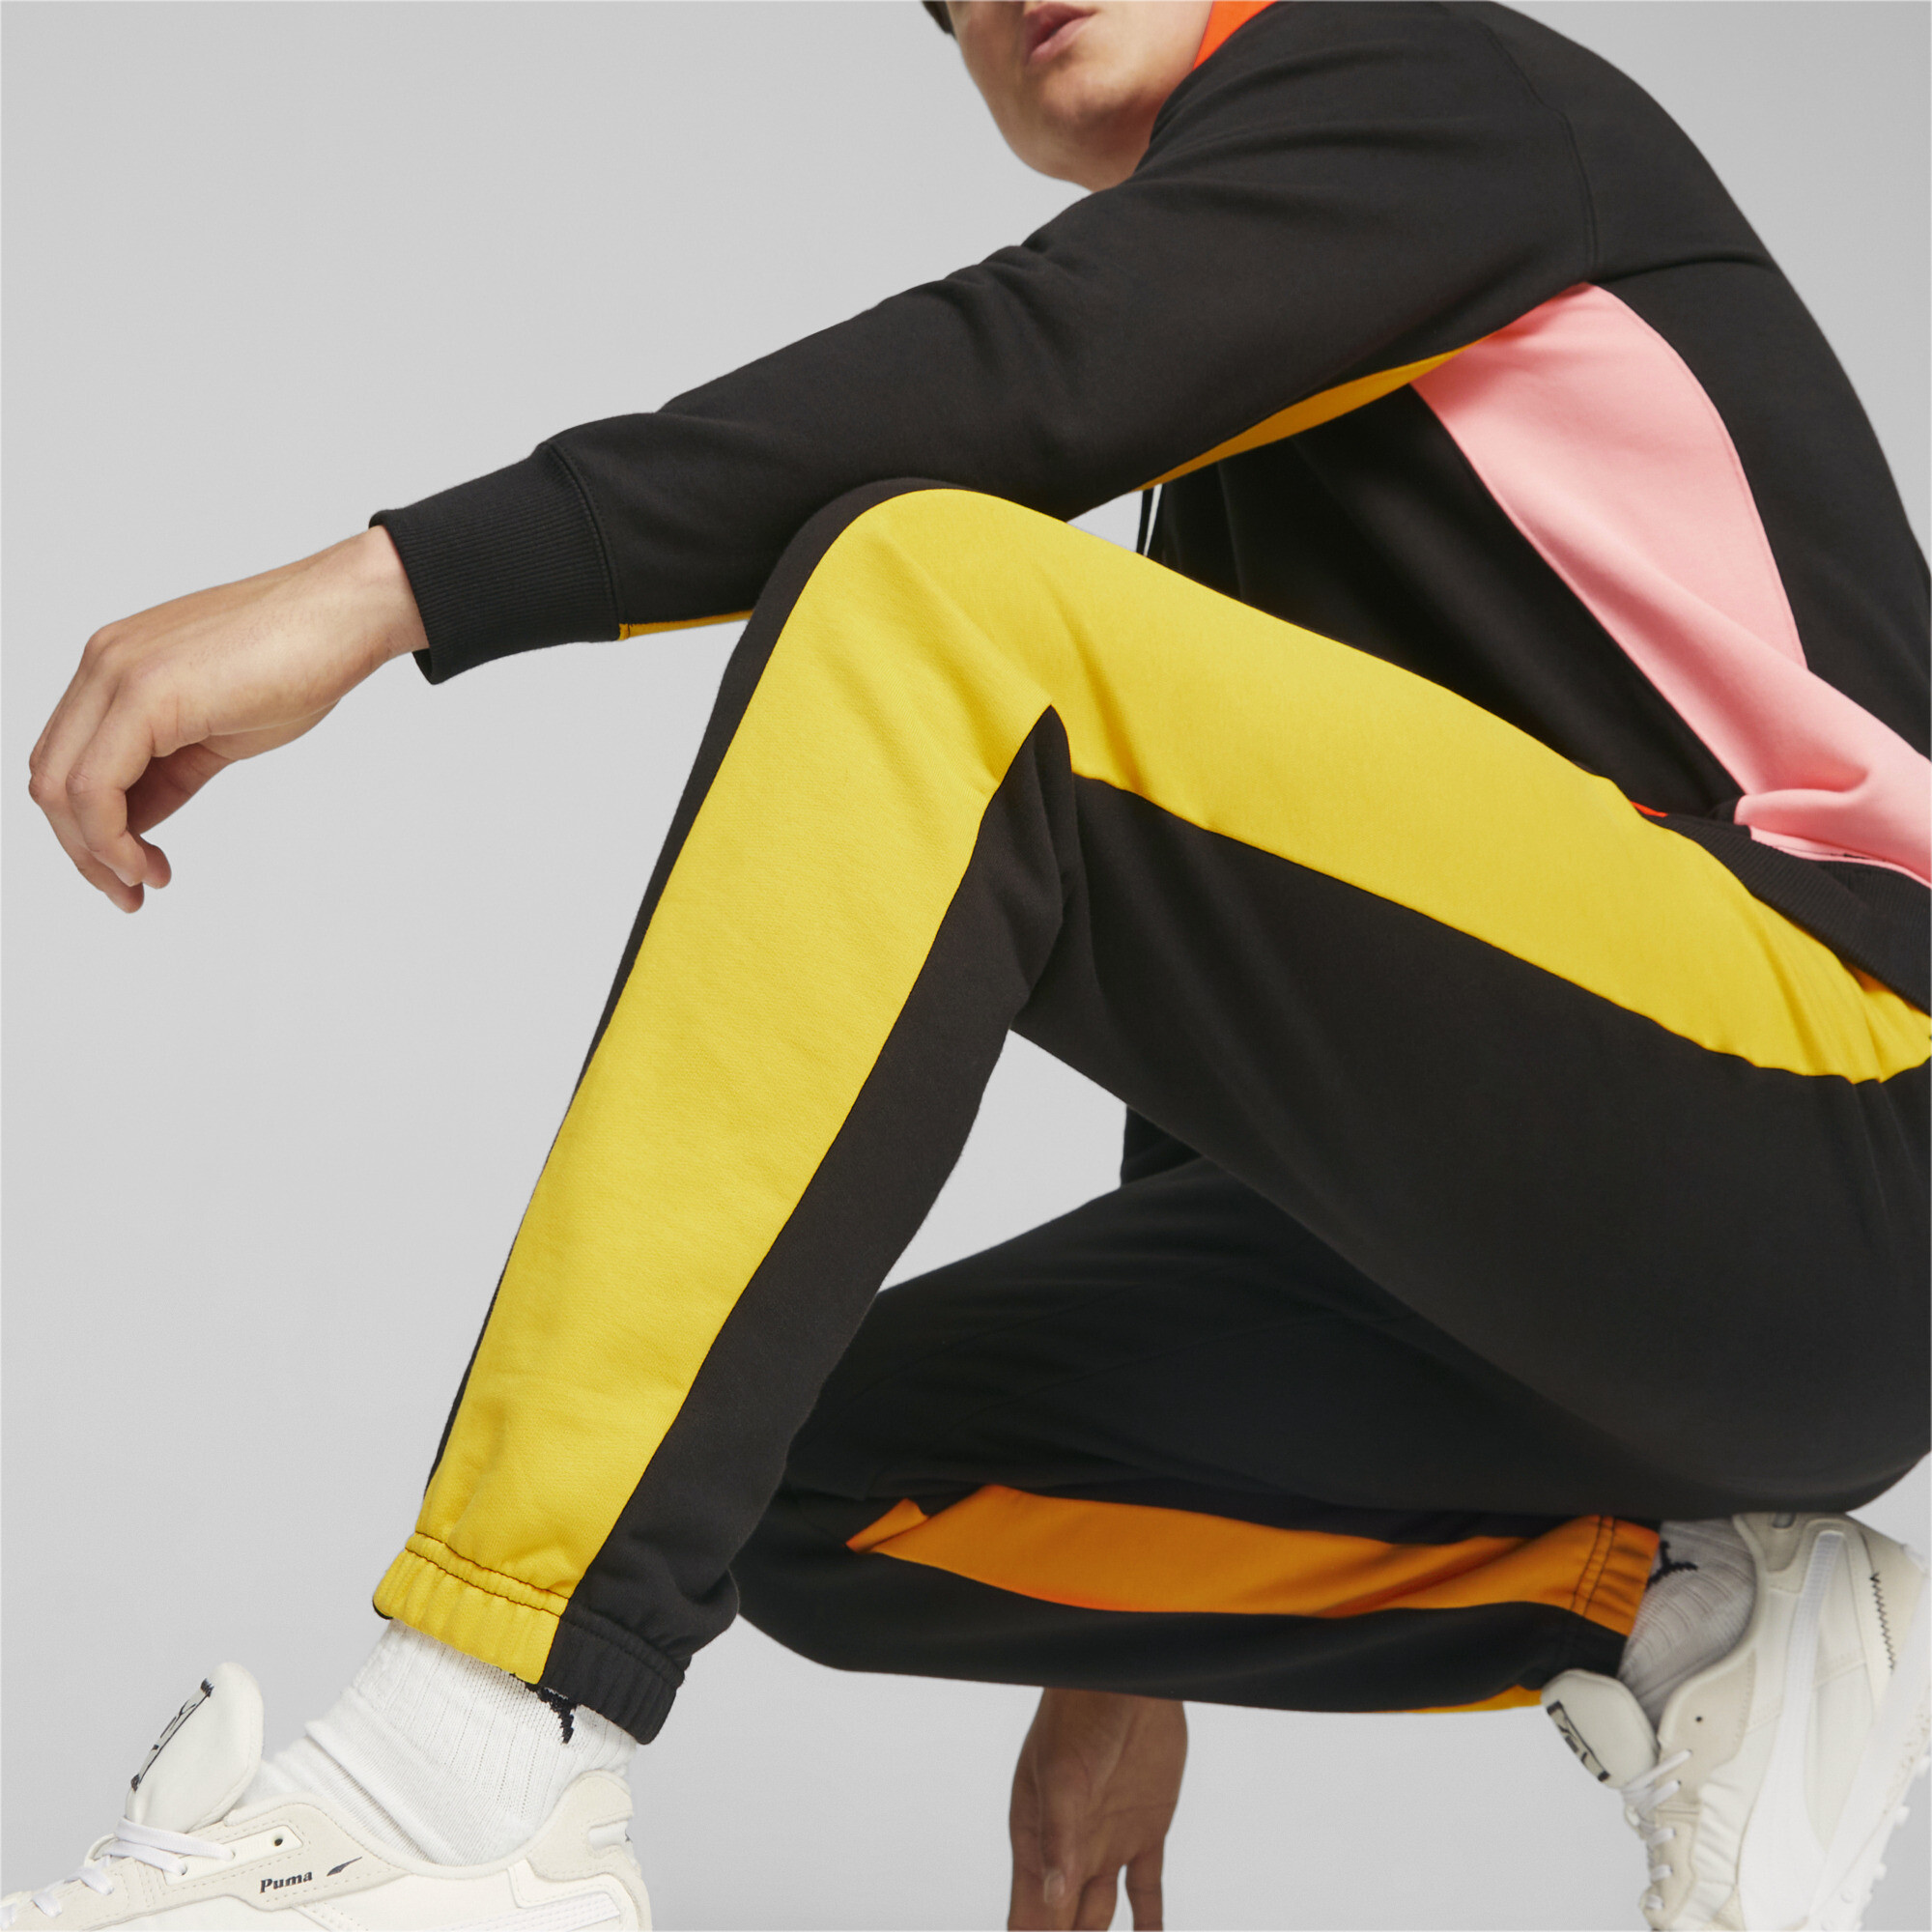 Men's Puma Classics Block's Sweatpants, Black, Size XS, Clothing